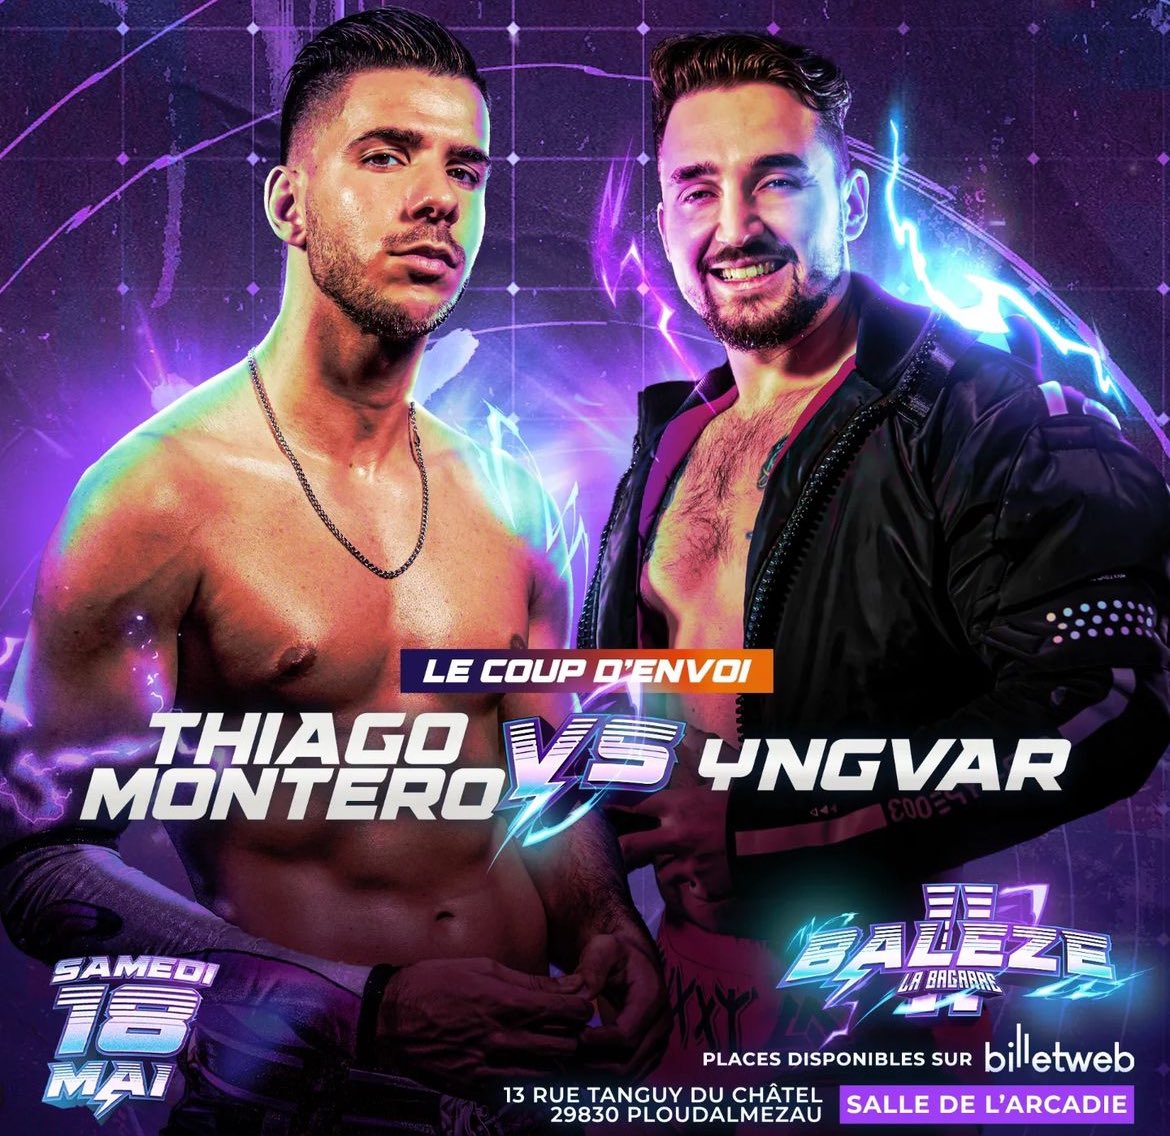 [News] Nouveau match annoncé pour le show « Baleze II ». Le coup d’envoi sera lancé entre Thiago Montero et Yngvar. Pour rappel, le show a lieu ce samedi 18 mai à Ploudalmezeau. - @IciLaBagarre